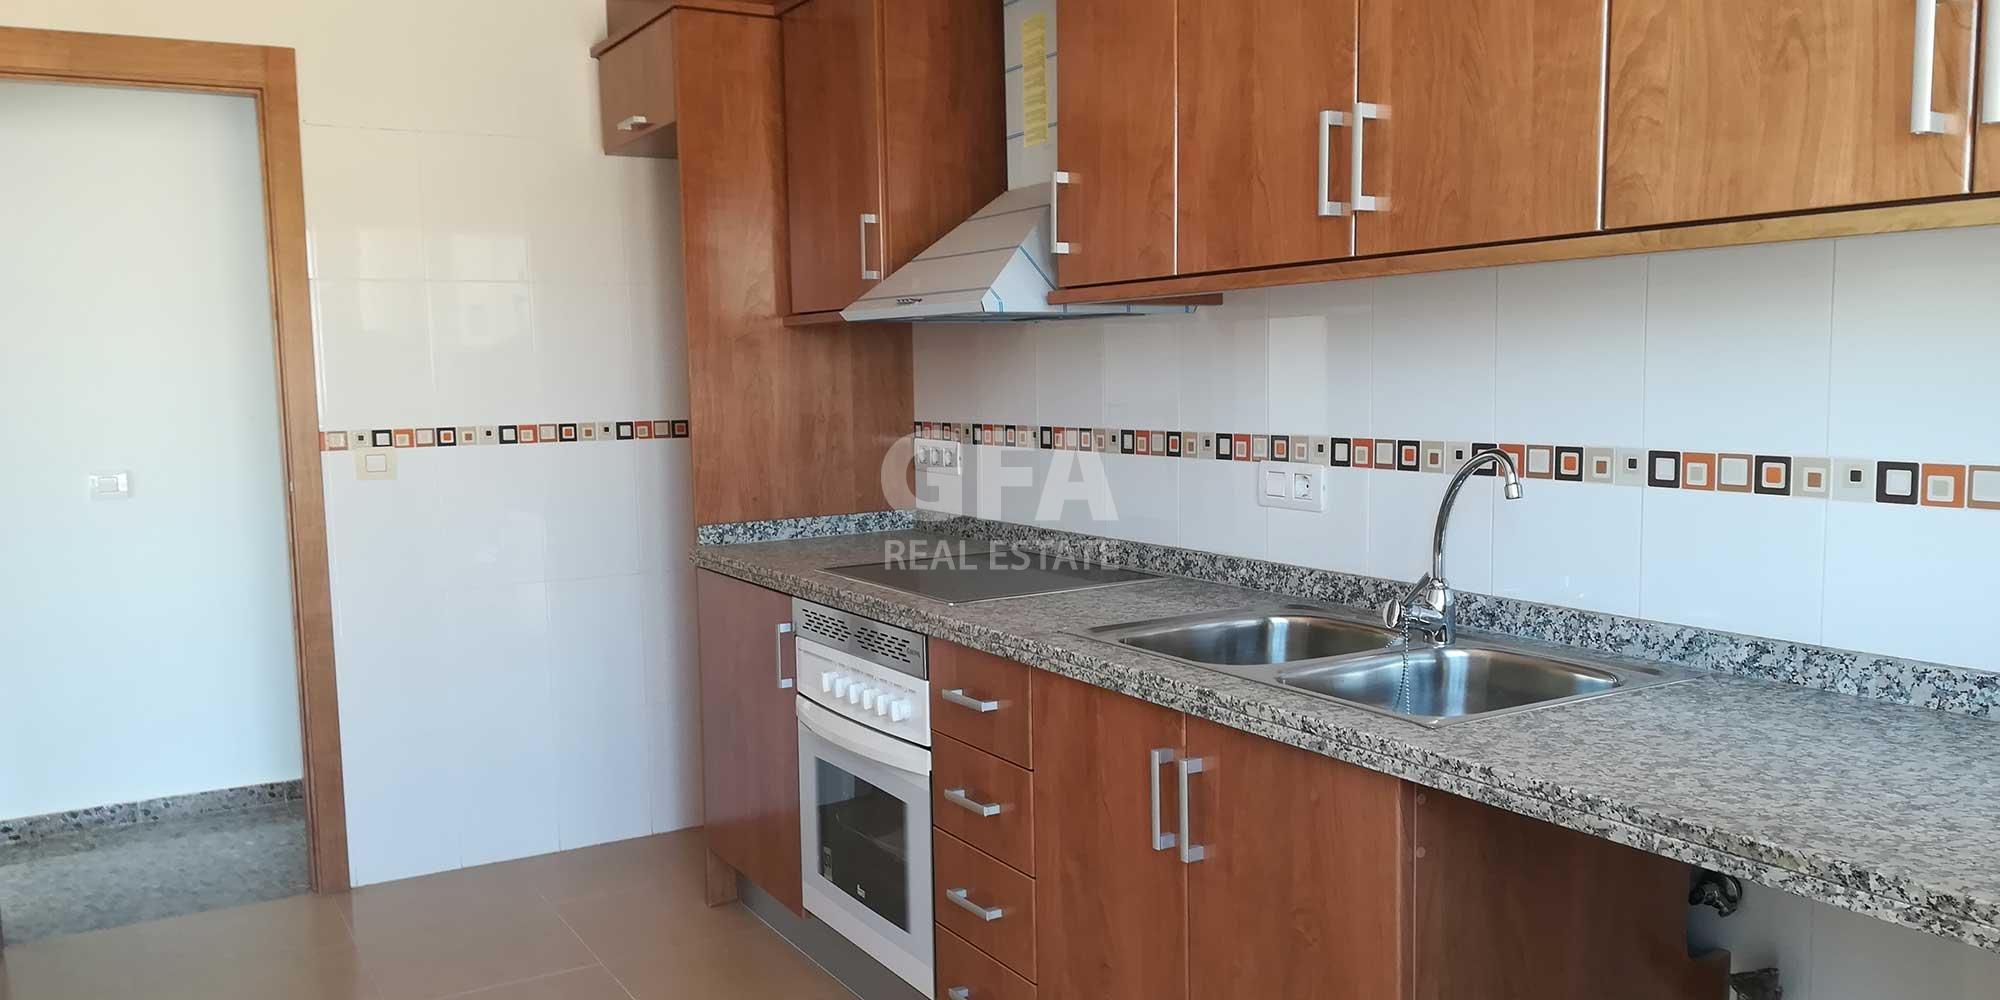 Alquiler piso obra nueva en Torreblanca cocina